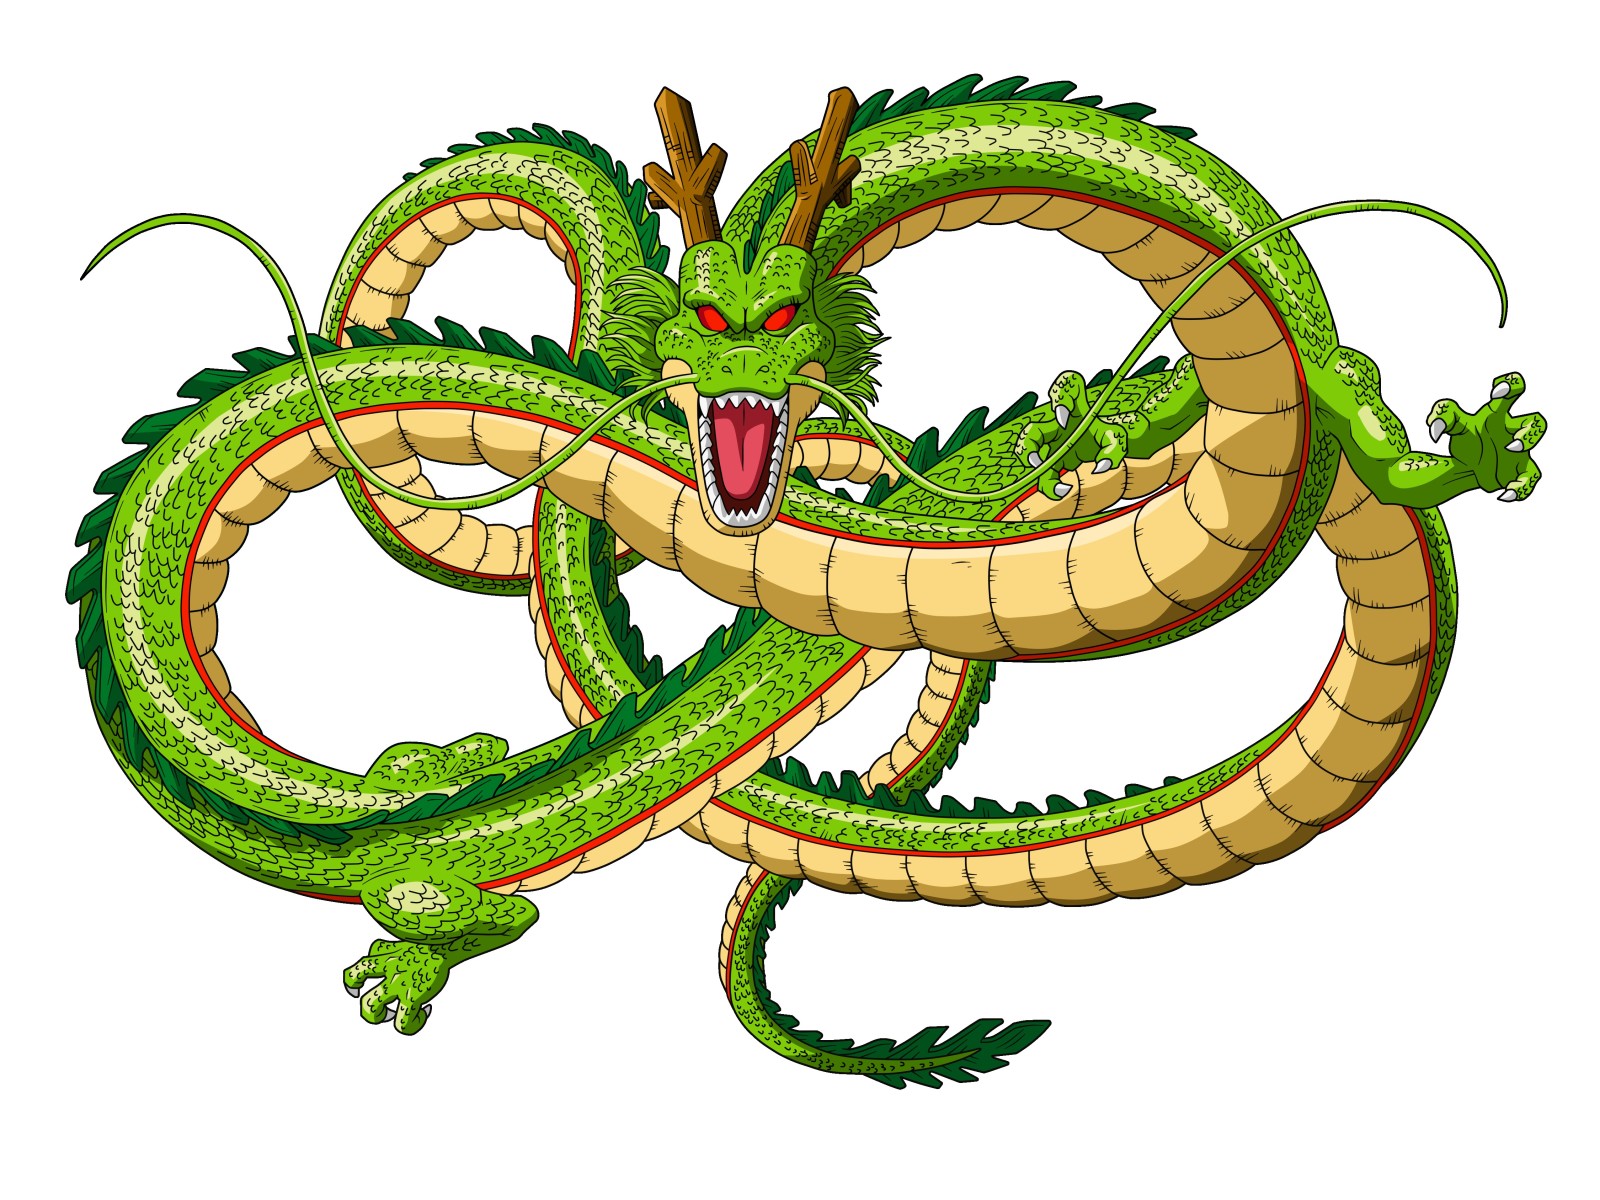 มังกร, สีเขียว, ball z dragon